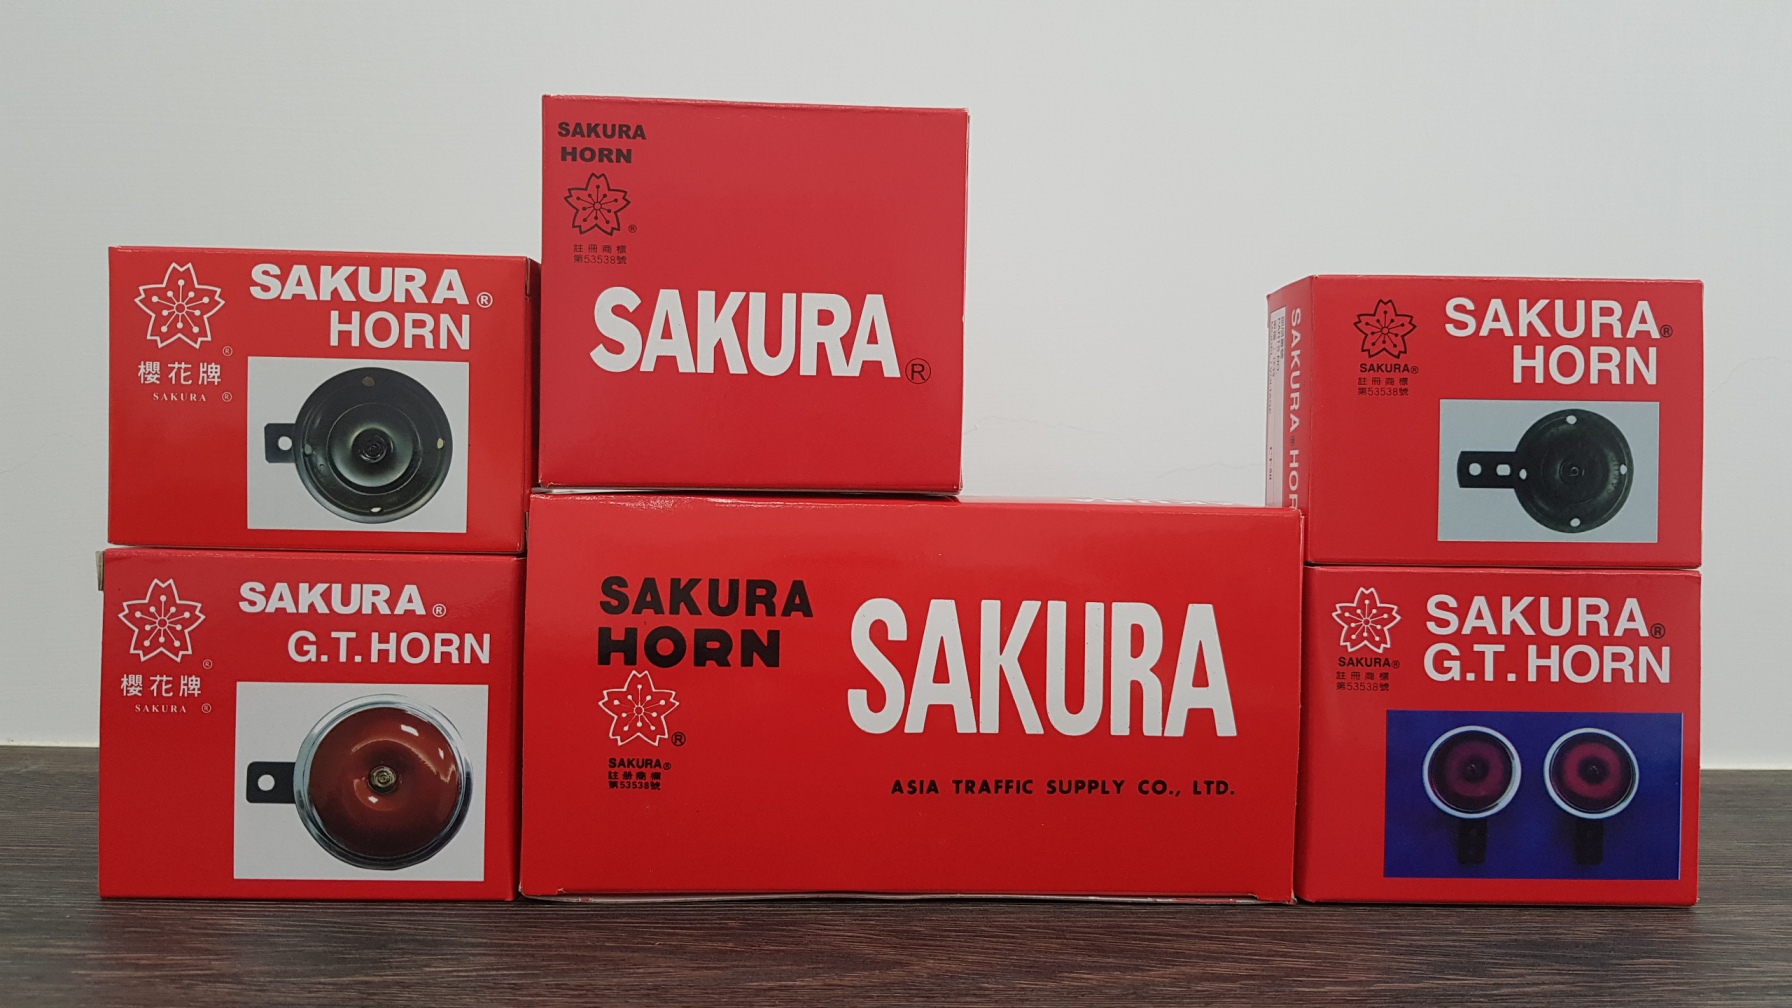 Por favor, reconozca el paquete rojo de SAKURA HORN.